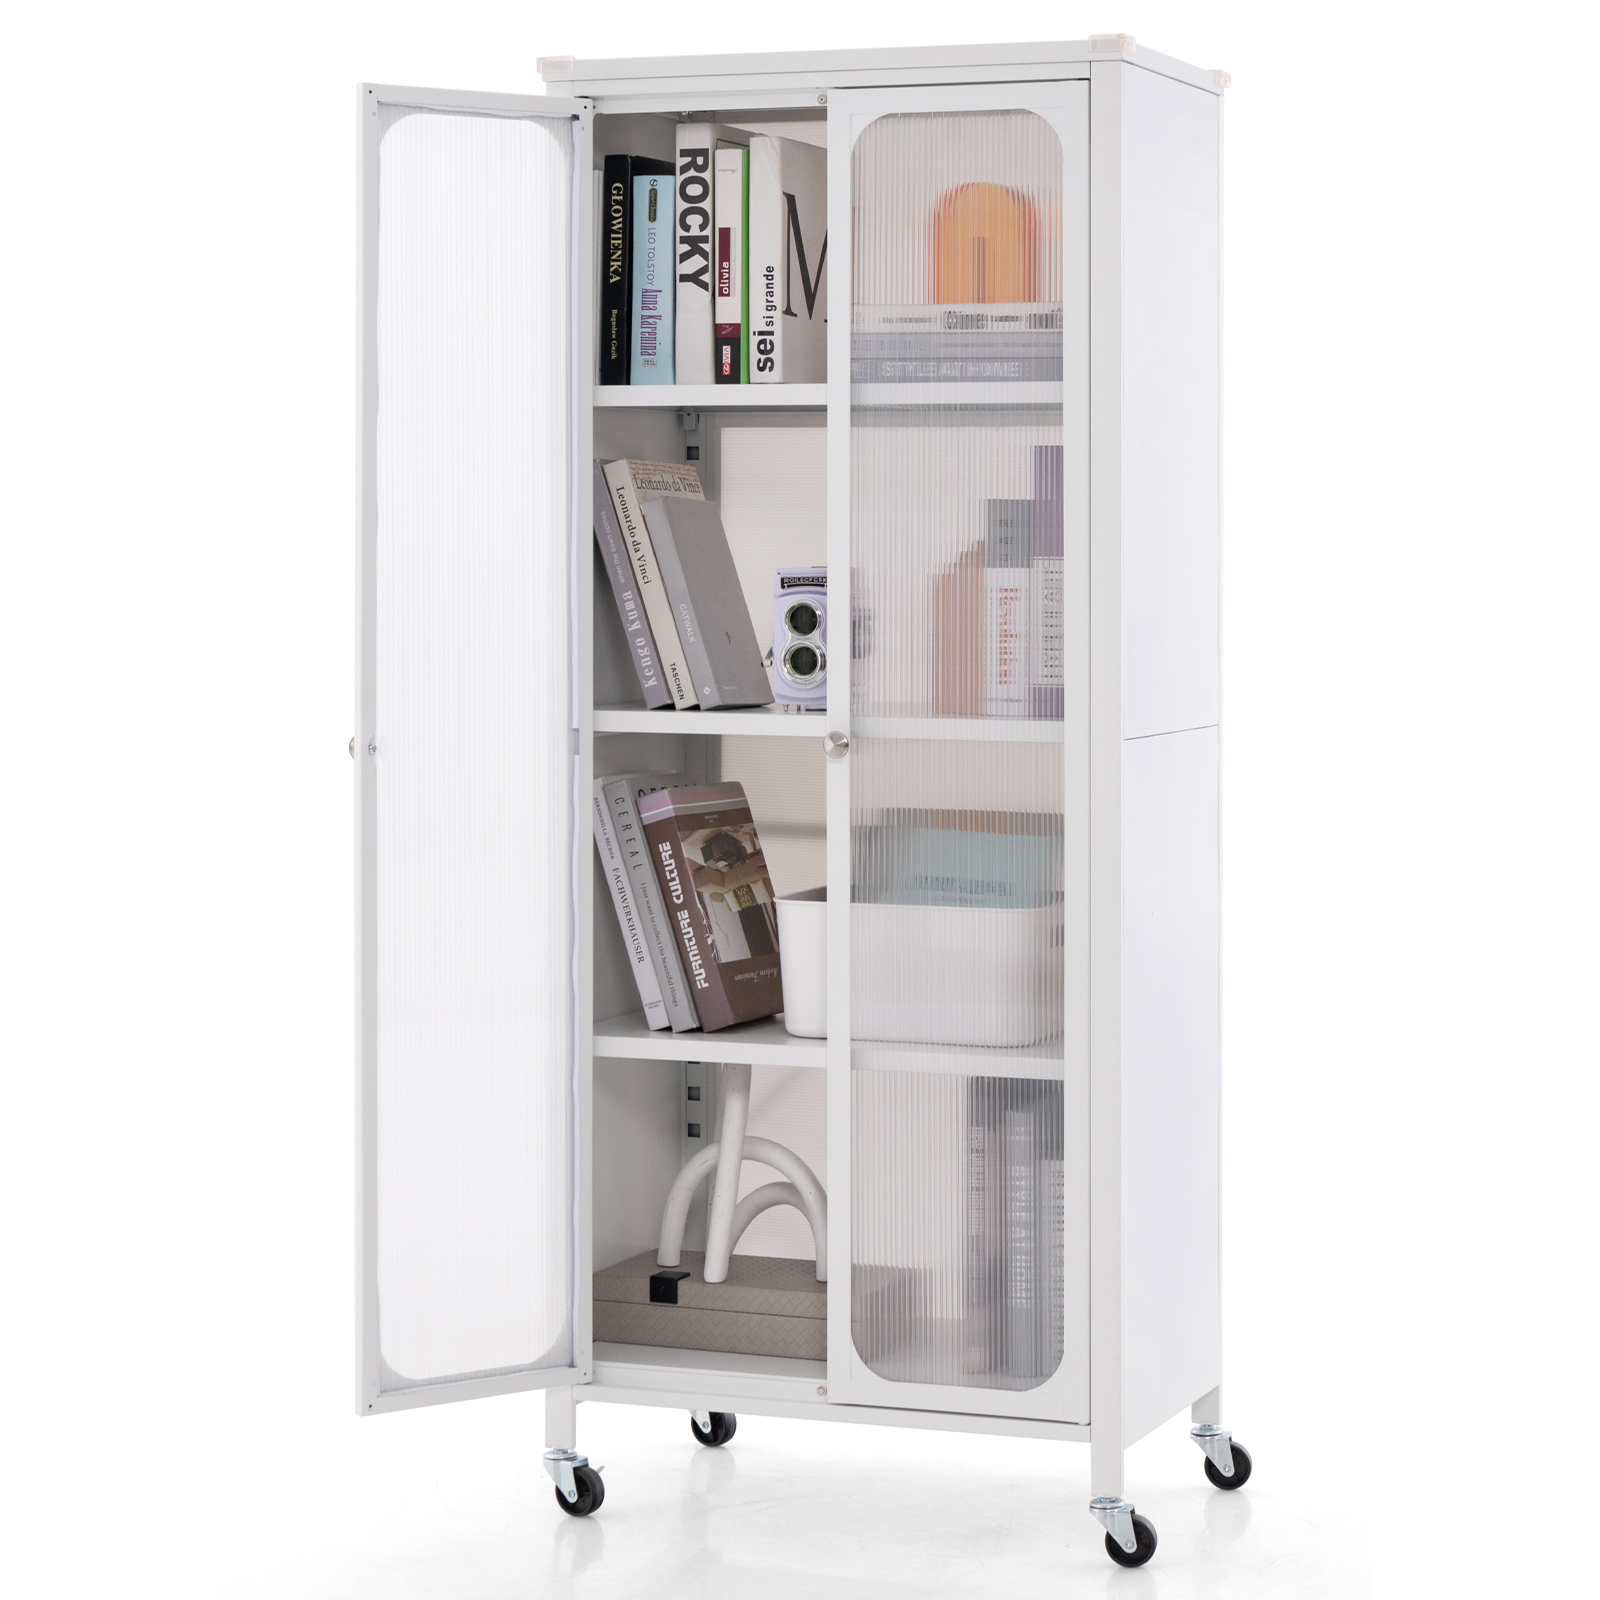 Mobile_2_Doors_Food_Pantry_Cupboard_Storage_Cabinet_with_Wheels-4.jpg